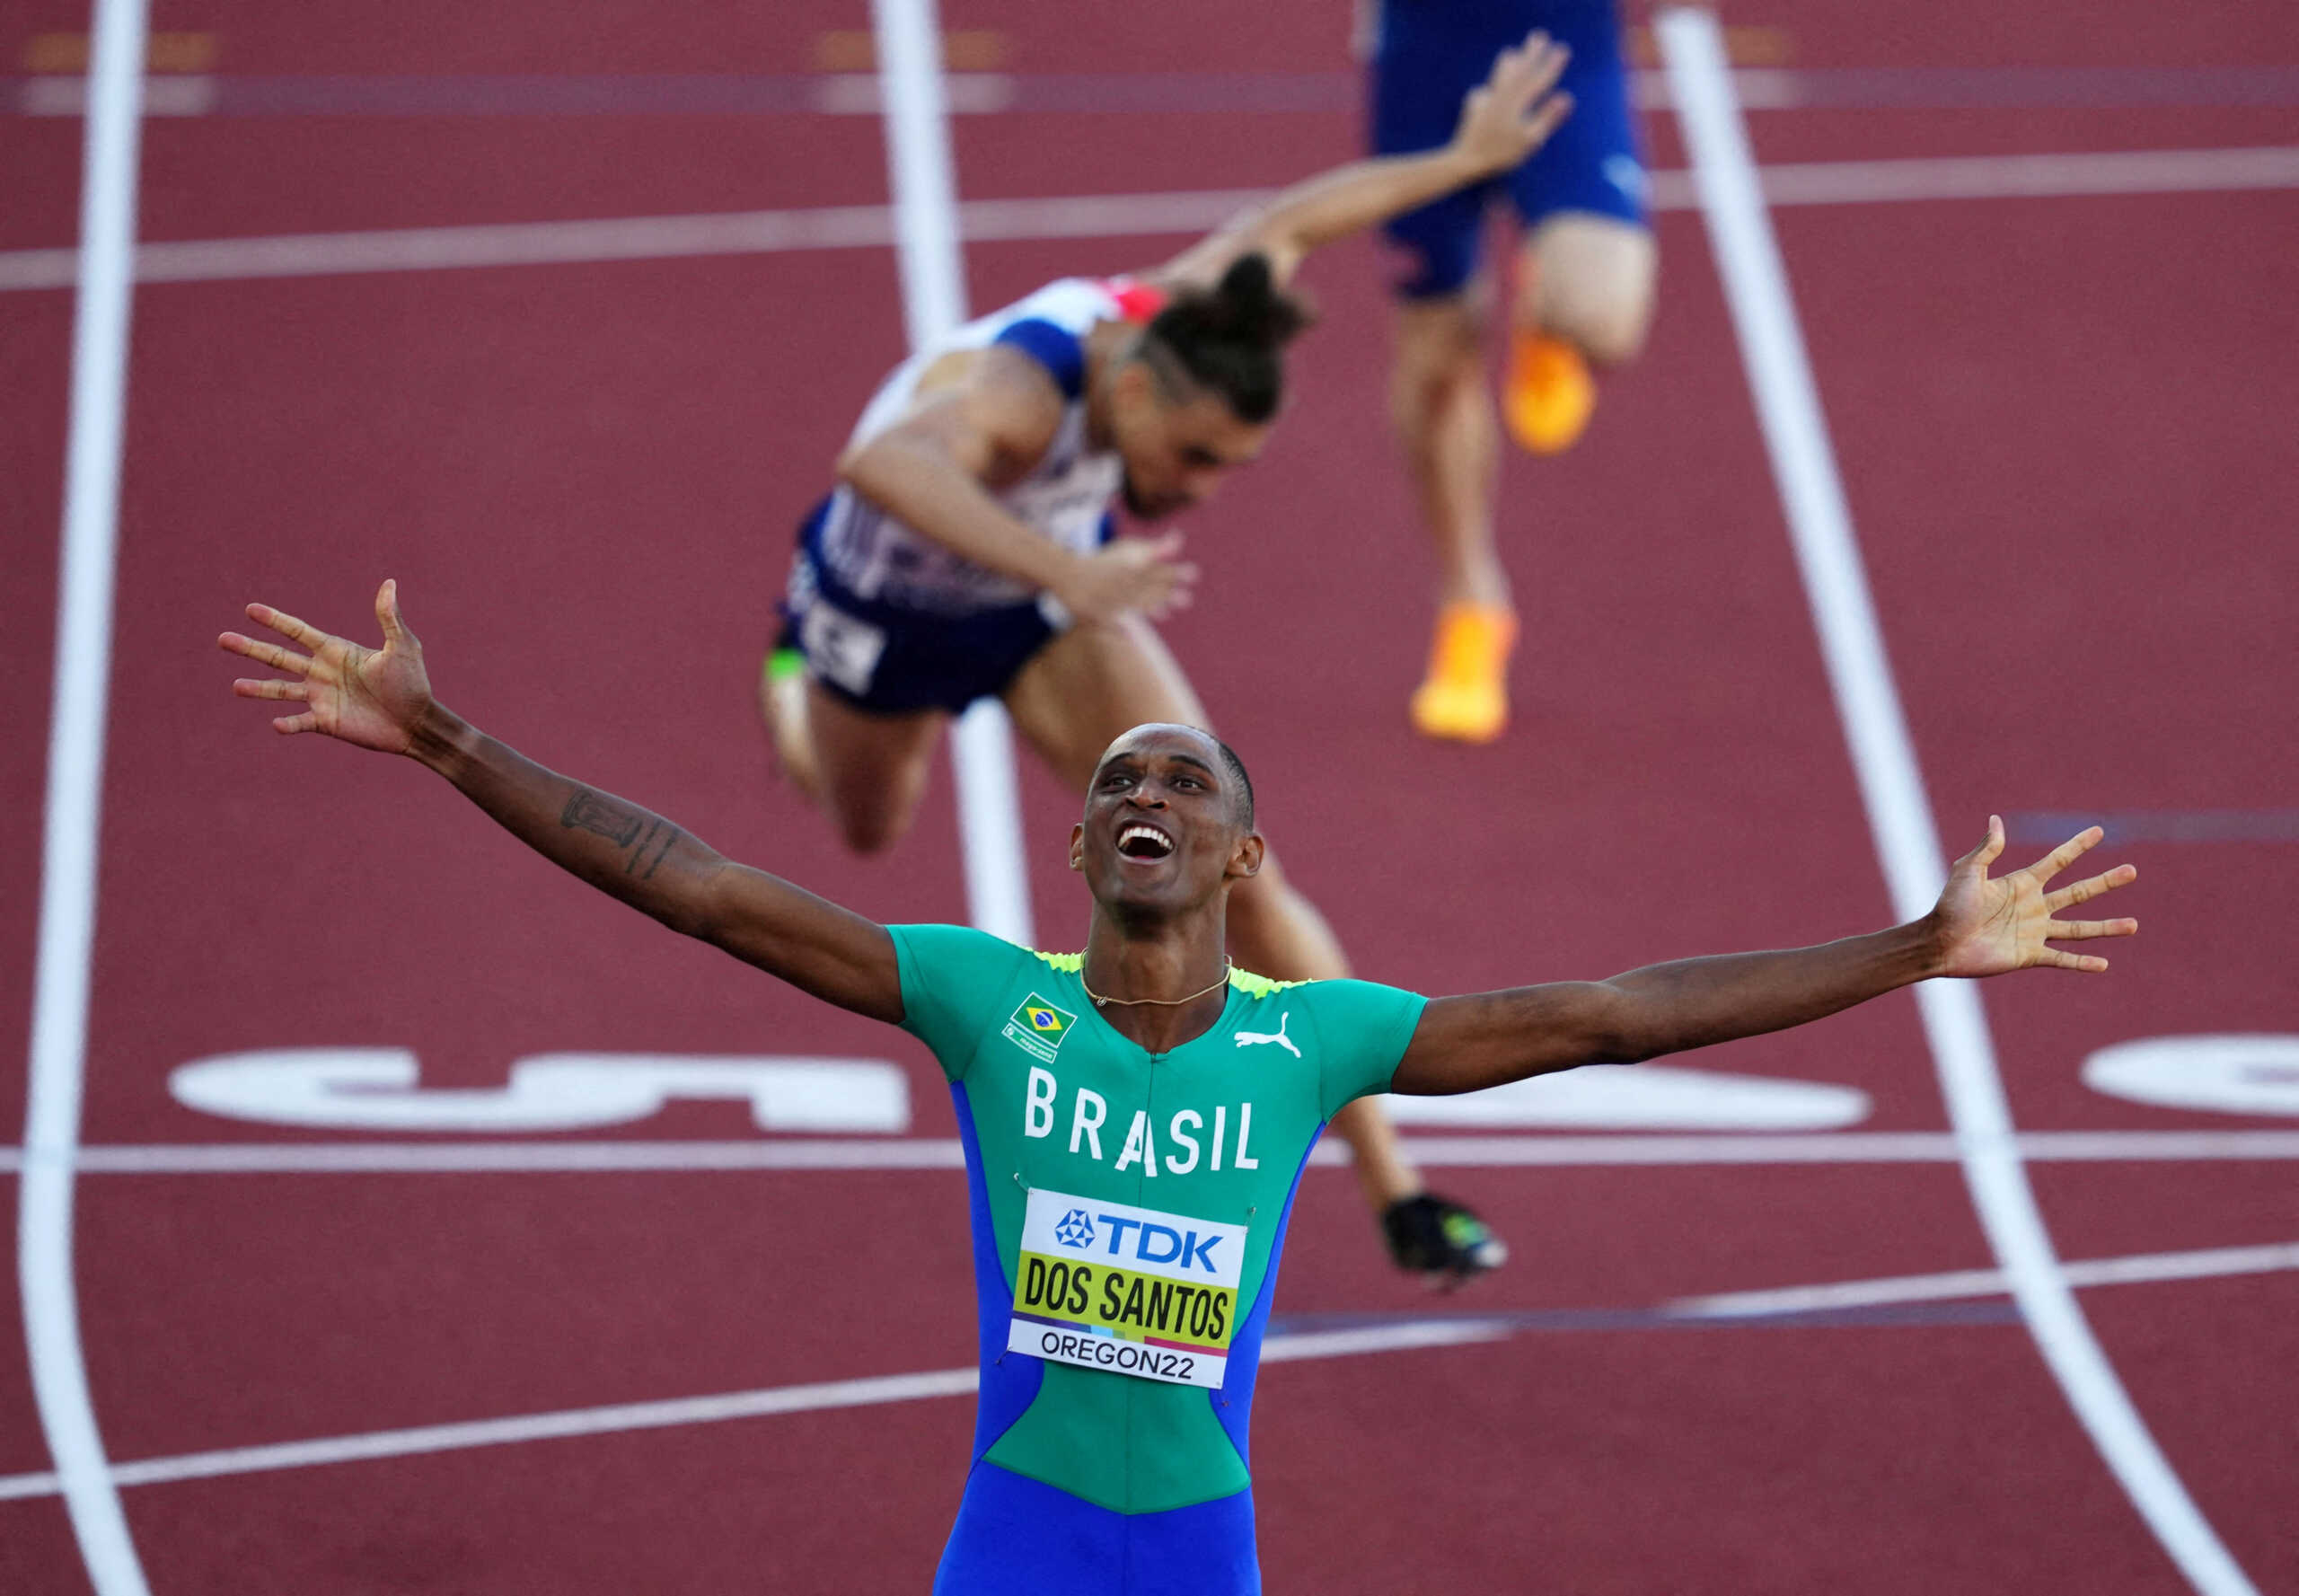 Παγκόσμιο Πρωτάθλημα στίβου: Φοβερή κούρσα και χρυσό μετάλλιο για τον Άλισον ντος Σάντος στα 400 μέτρα με εμπόδια